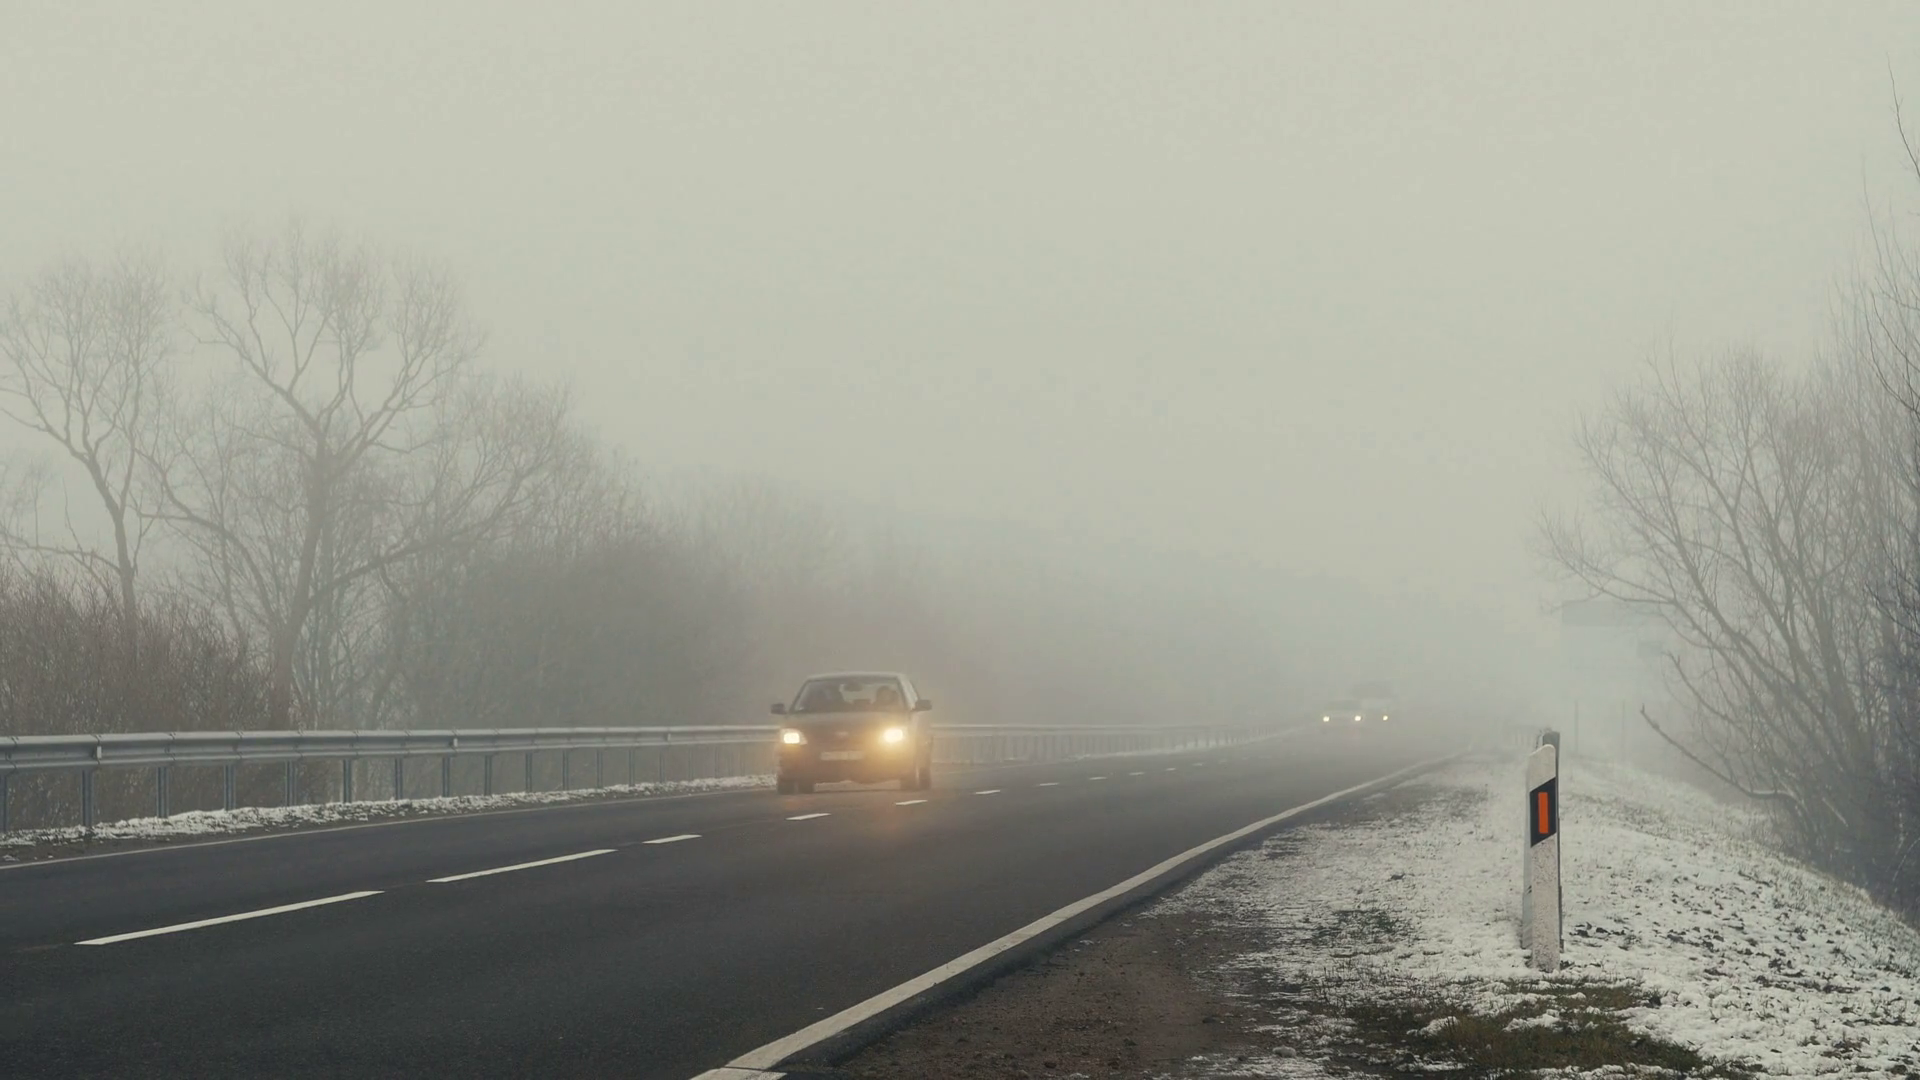 Завтра на некоторых автодорогах из-за тумана видимость будет ограничена